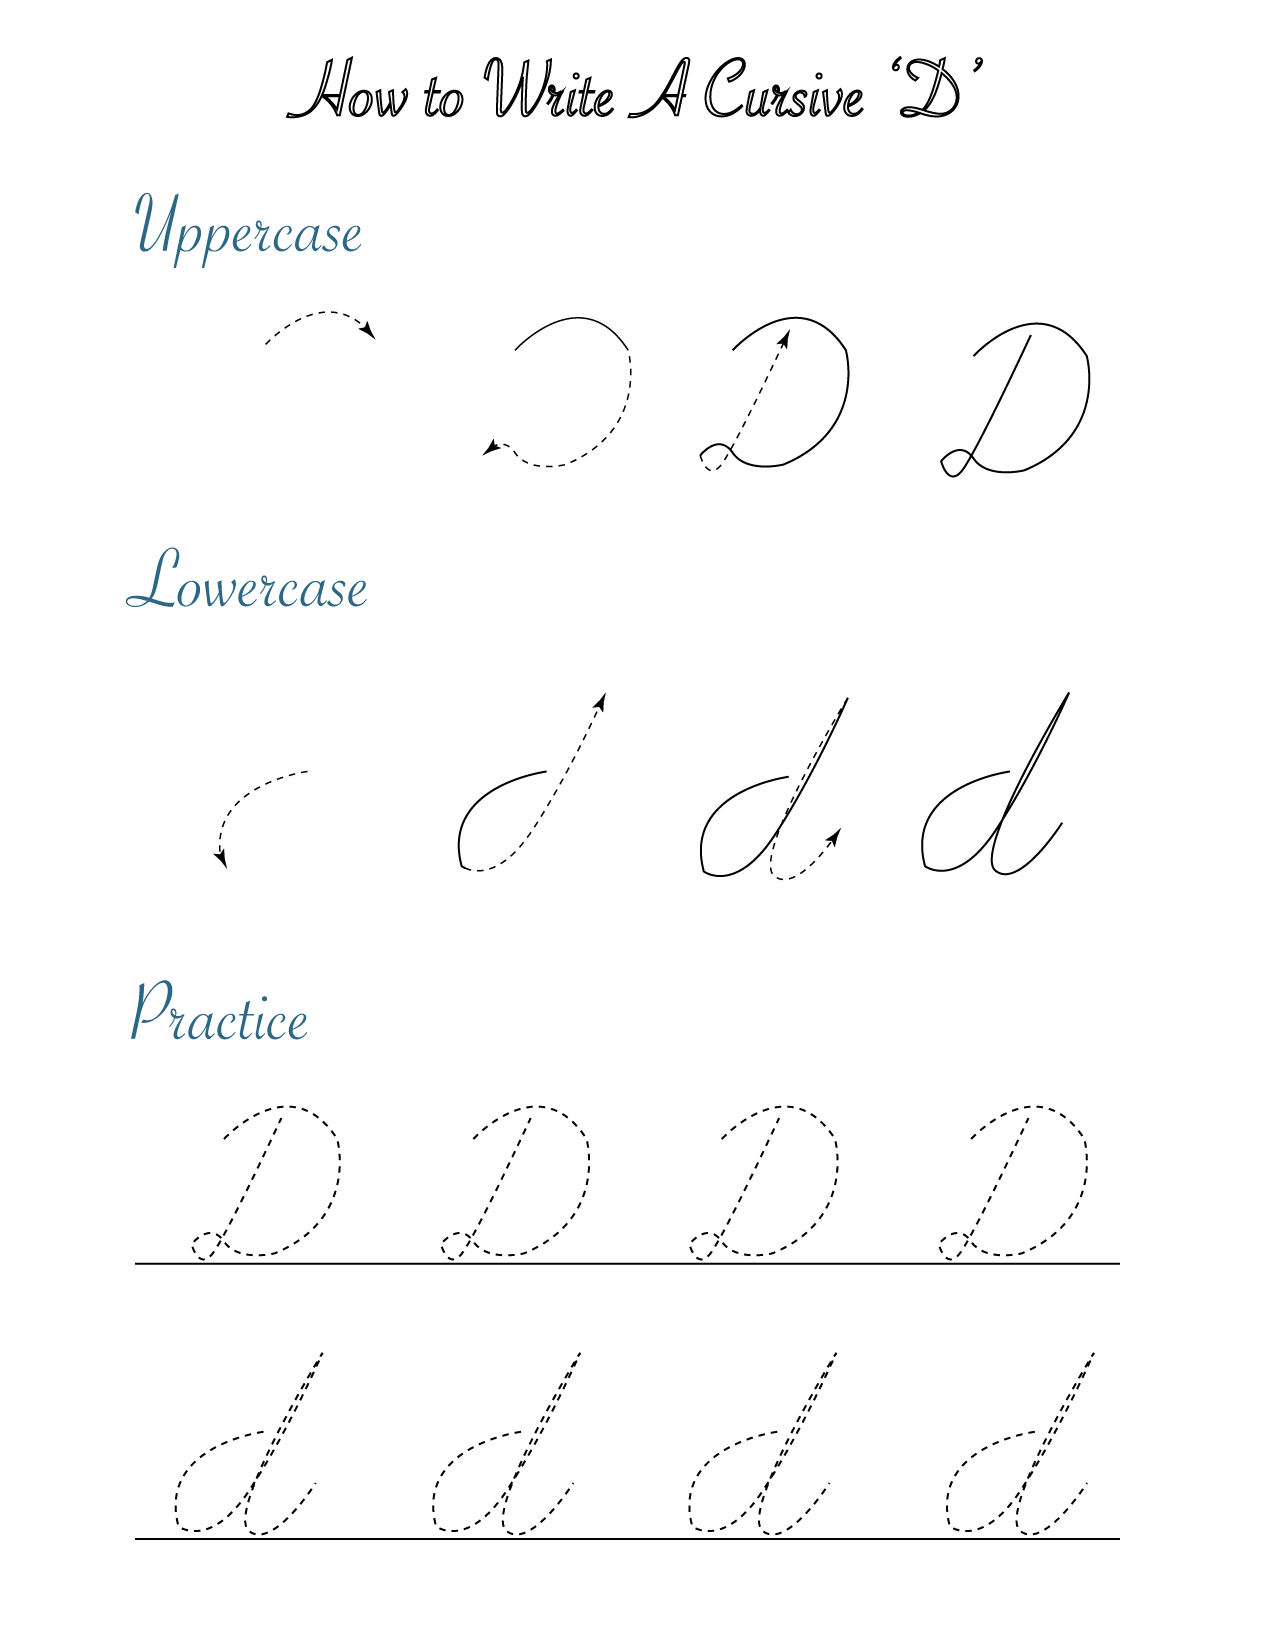 How to write a cursive 'D'